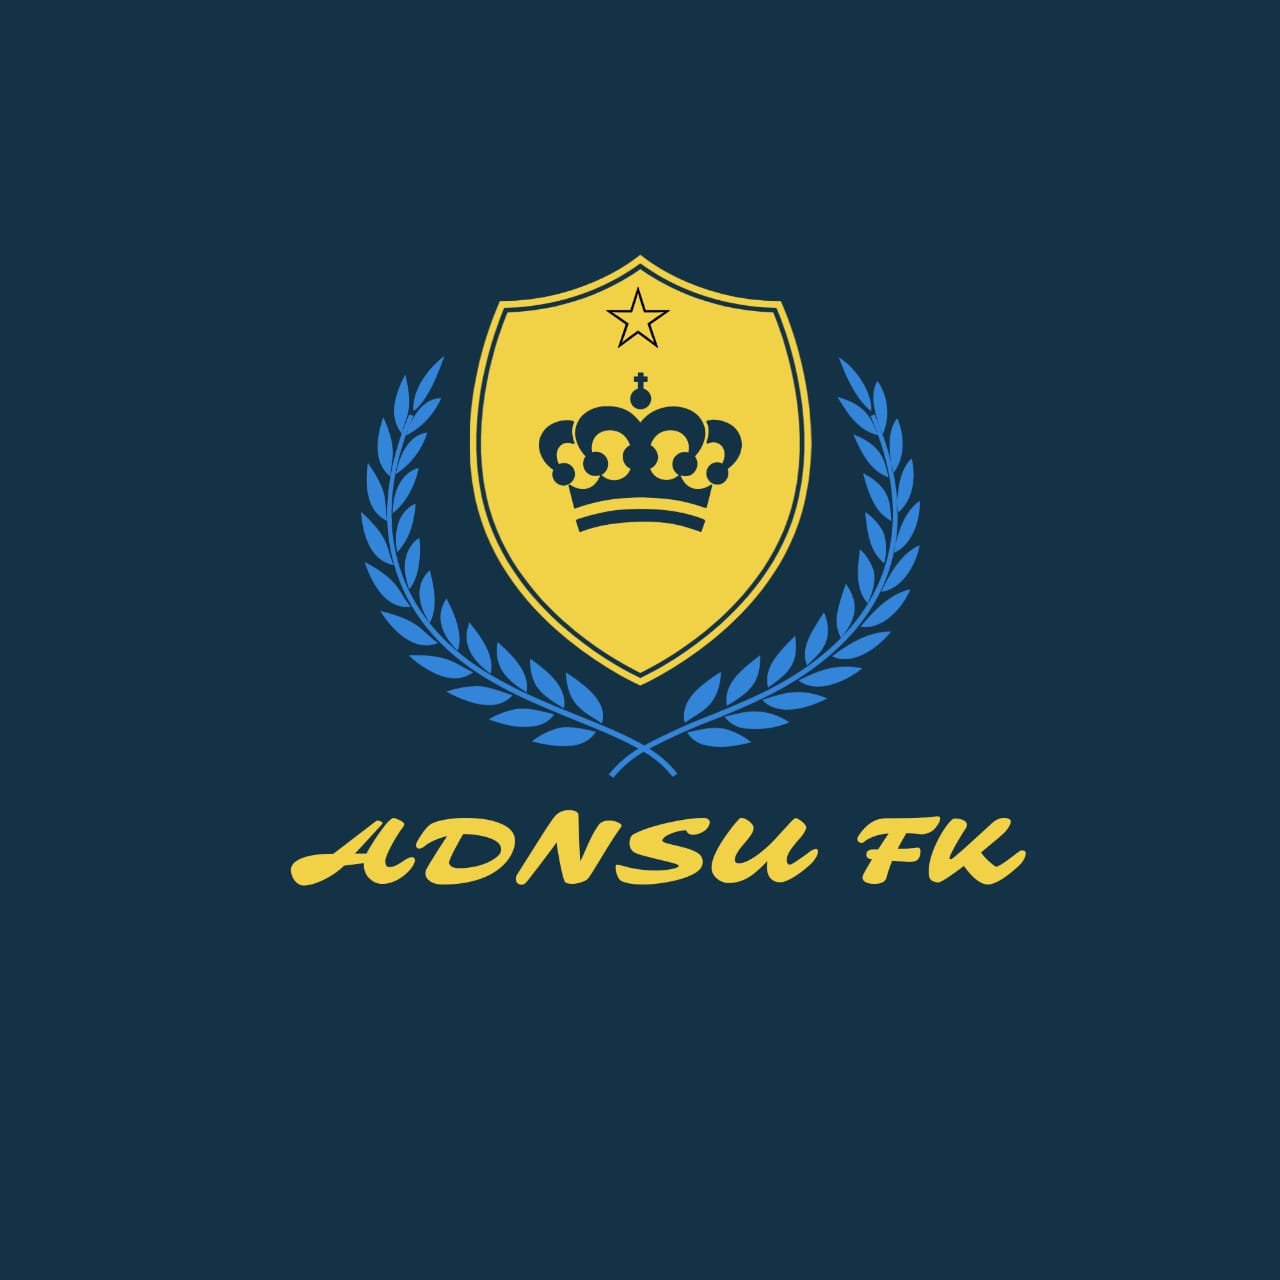 ADNSU FK